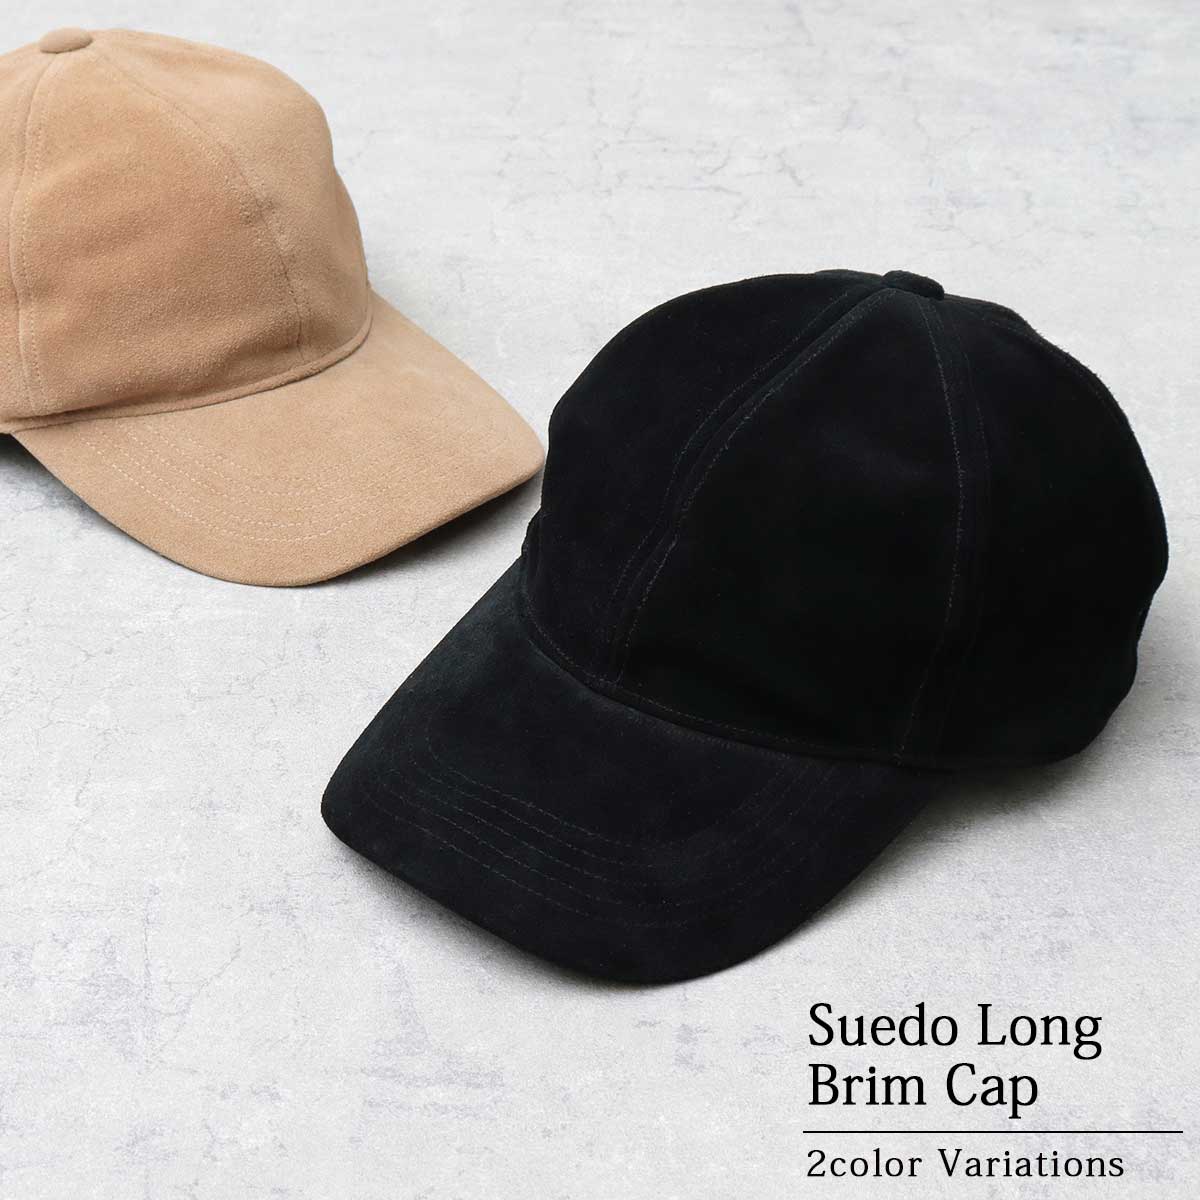 ブラック キャップ 帽子 深め 無地 シンプル スポーツ UVカット 紫外線対策